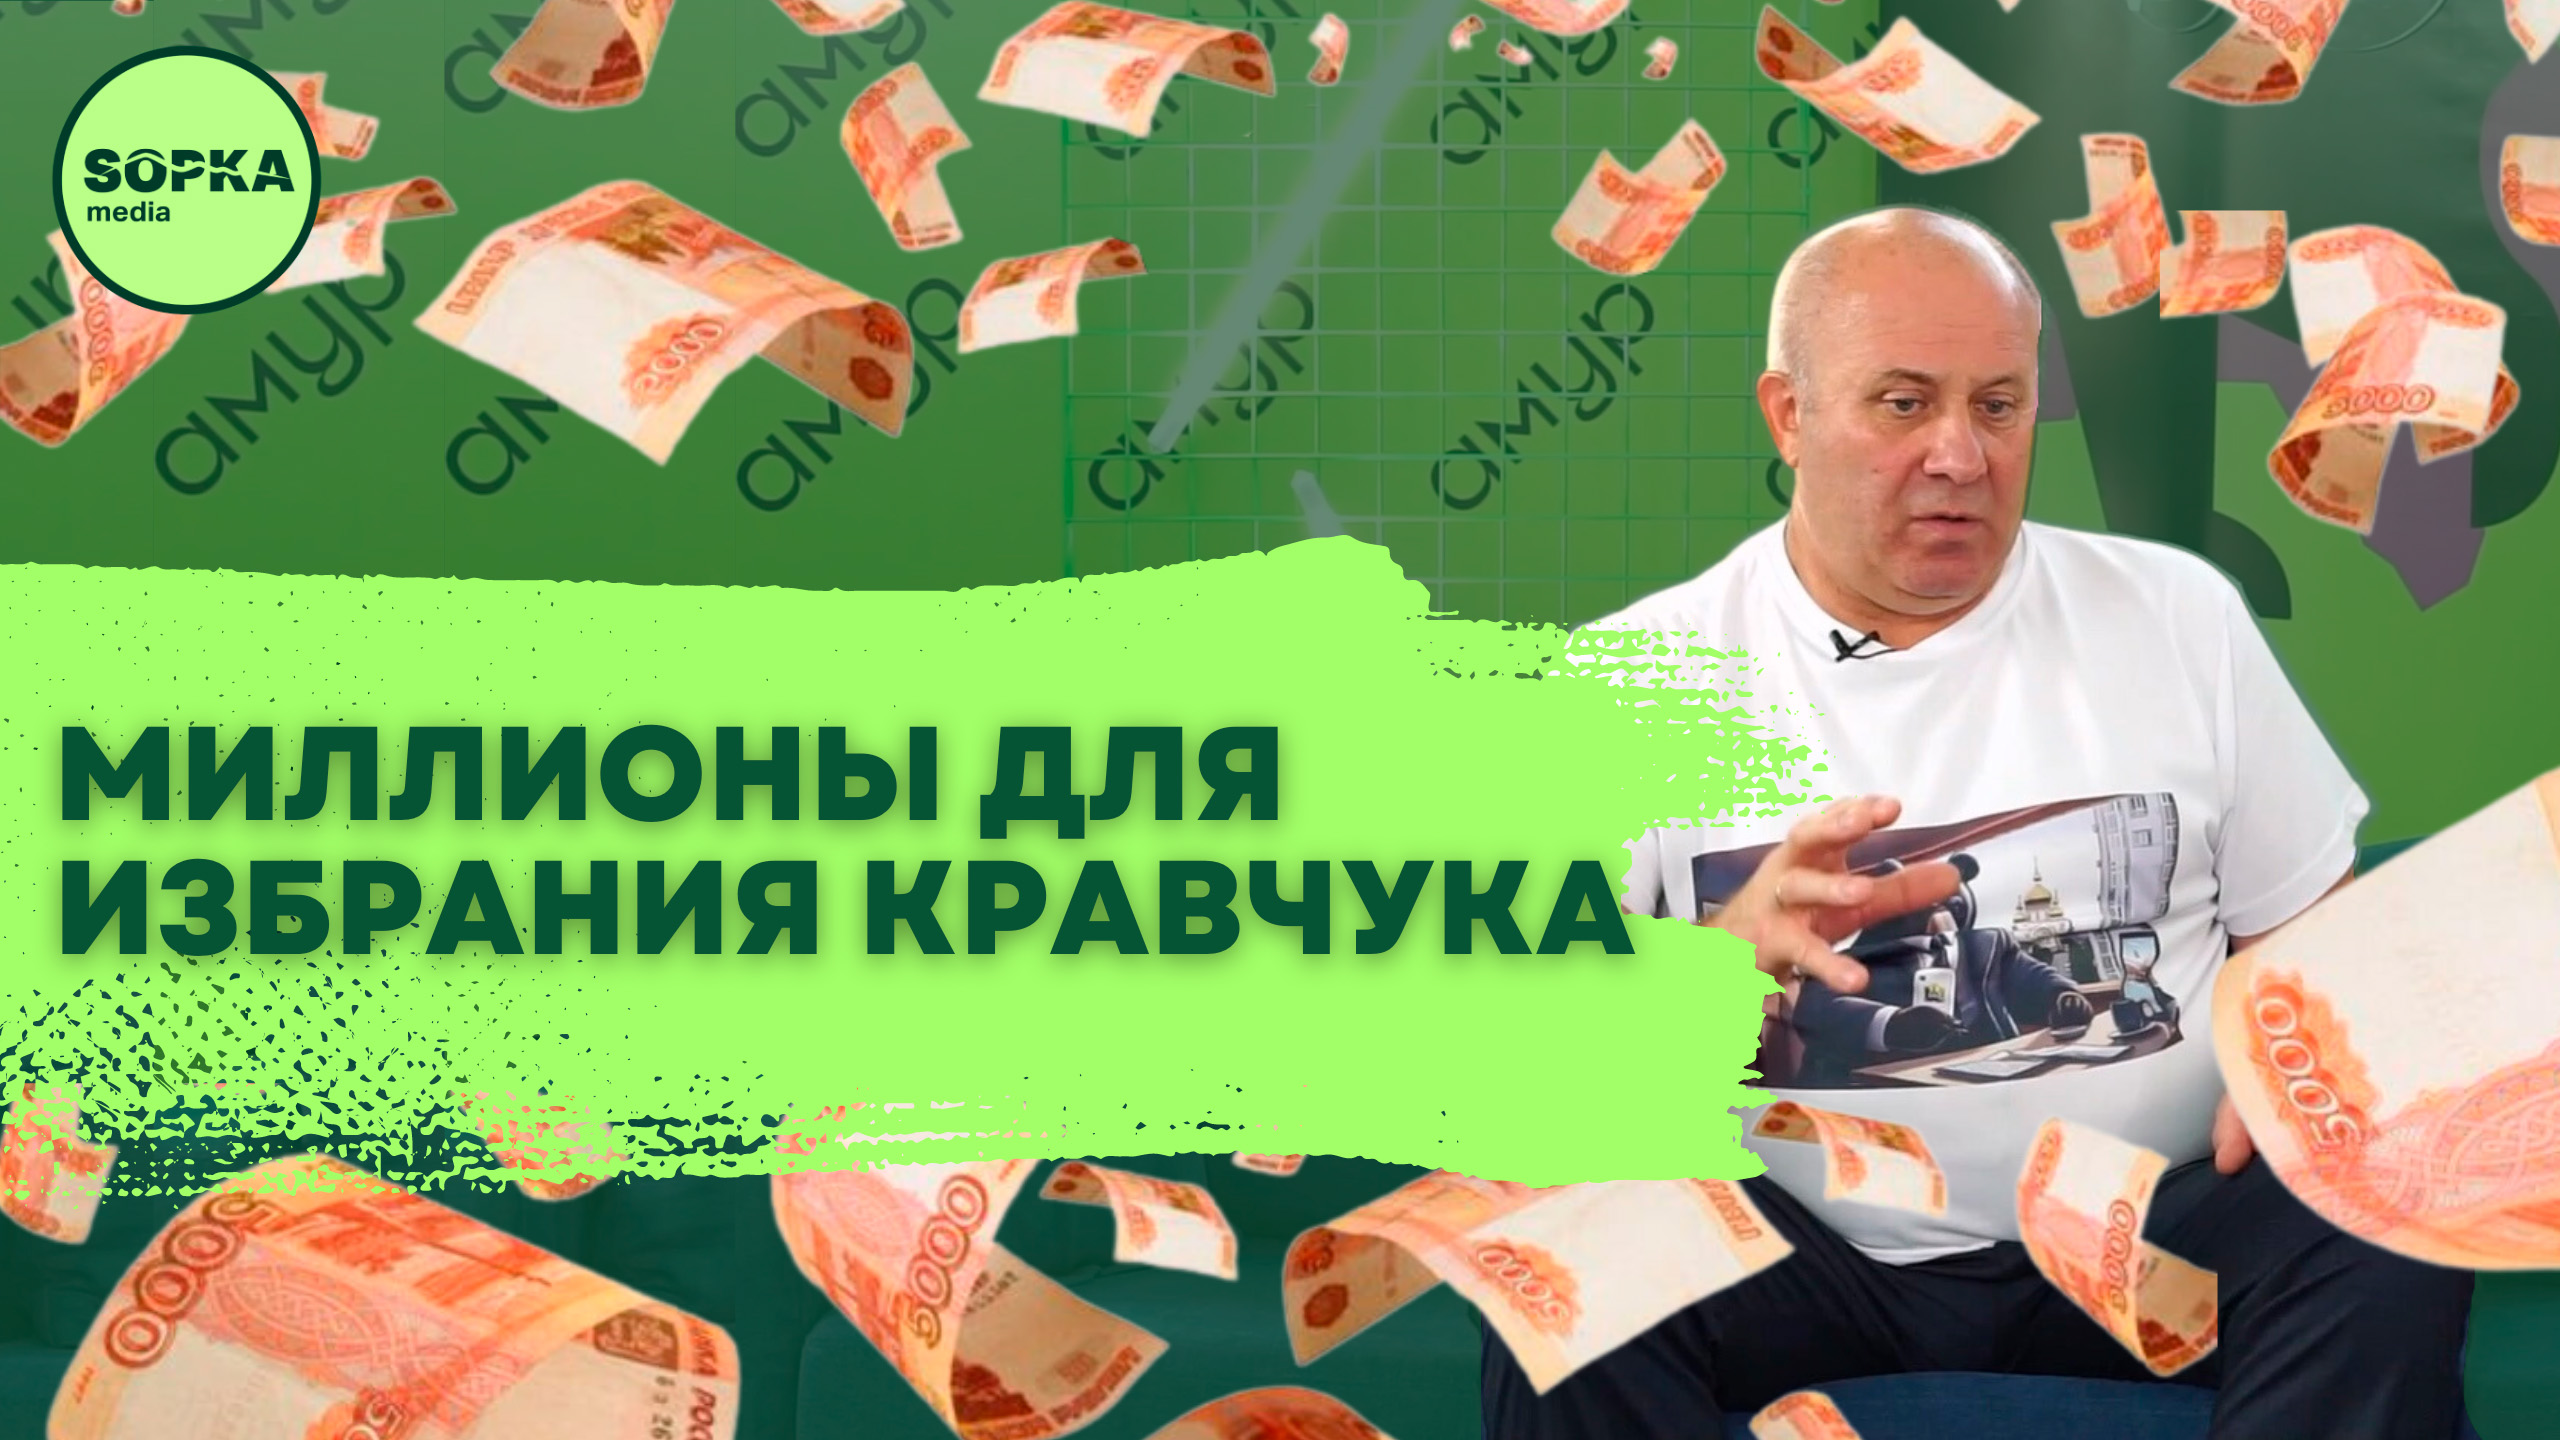 Миллионы для избрания Кравчука мэром Хабаровска